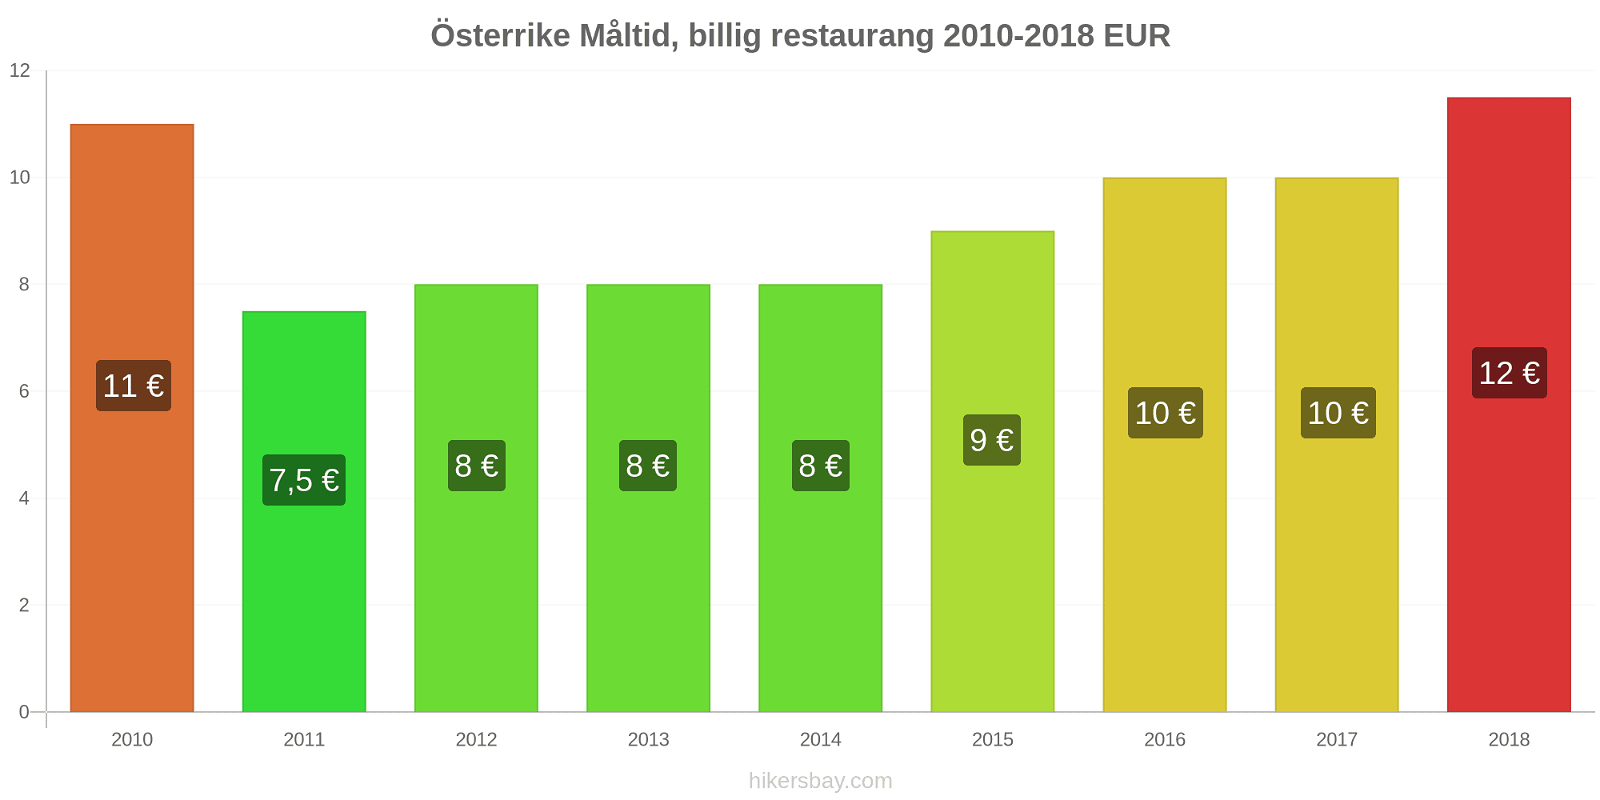 Österrike prisändringar Måltid i en billig restaurang hikersbay.com